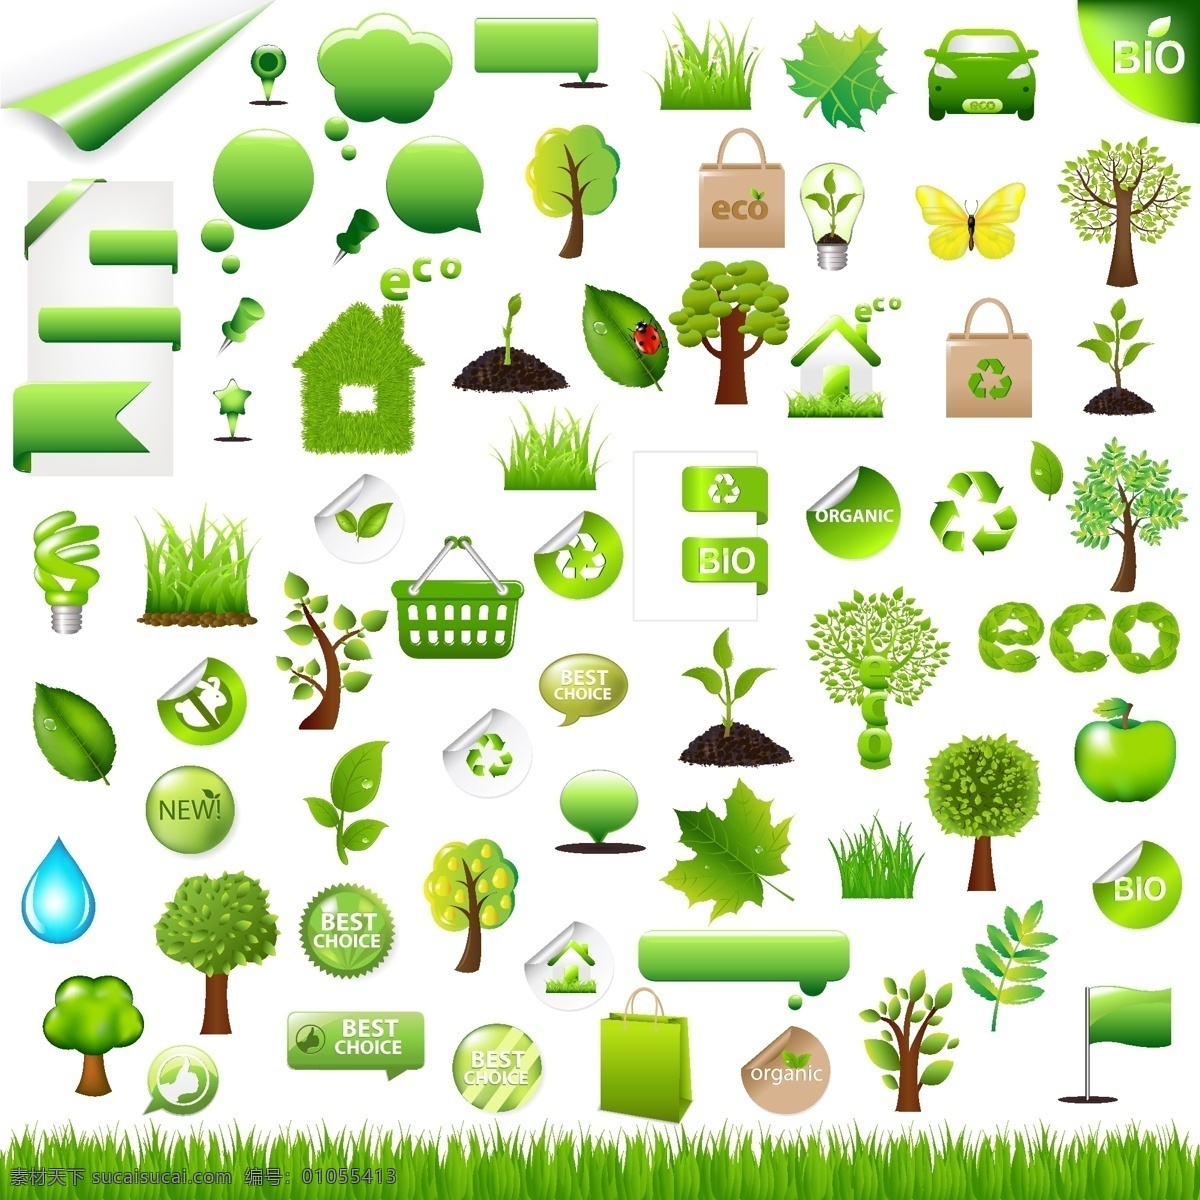 绿色生活 环保 图标 矢量 灯泡图标 房屋图标 绿色图标 树木图标 绿色小草 矢量图 其他矢量图